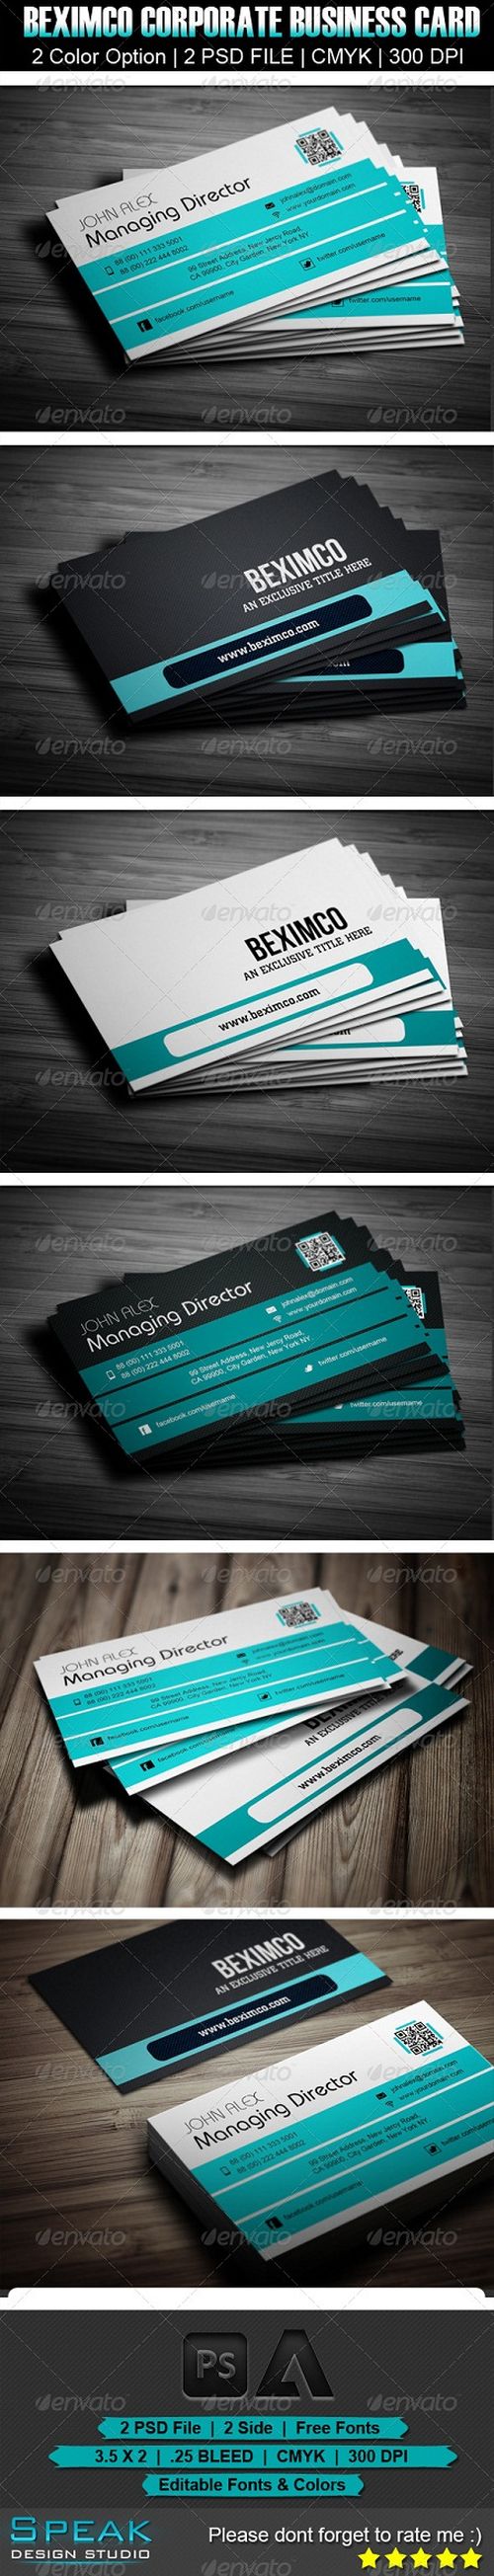 PSD - Beximco Corporate Business Card Design